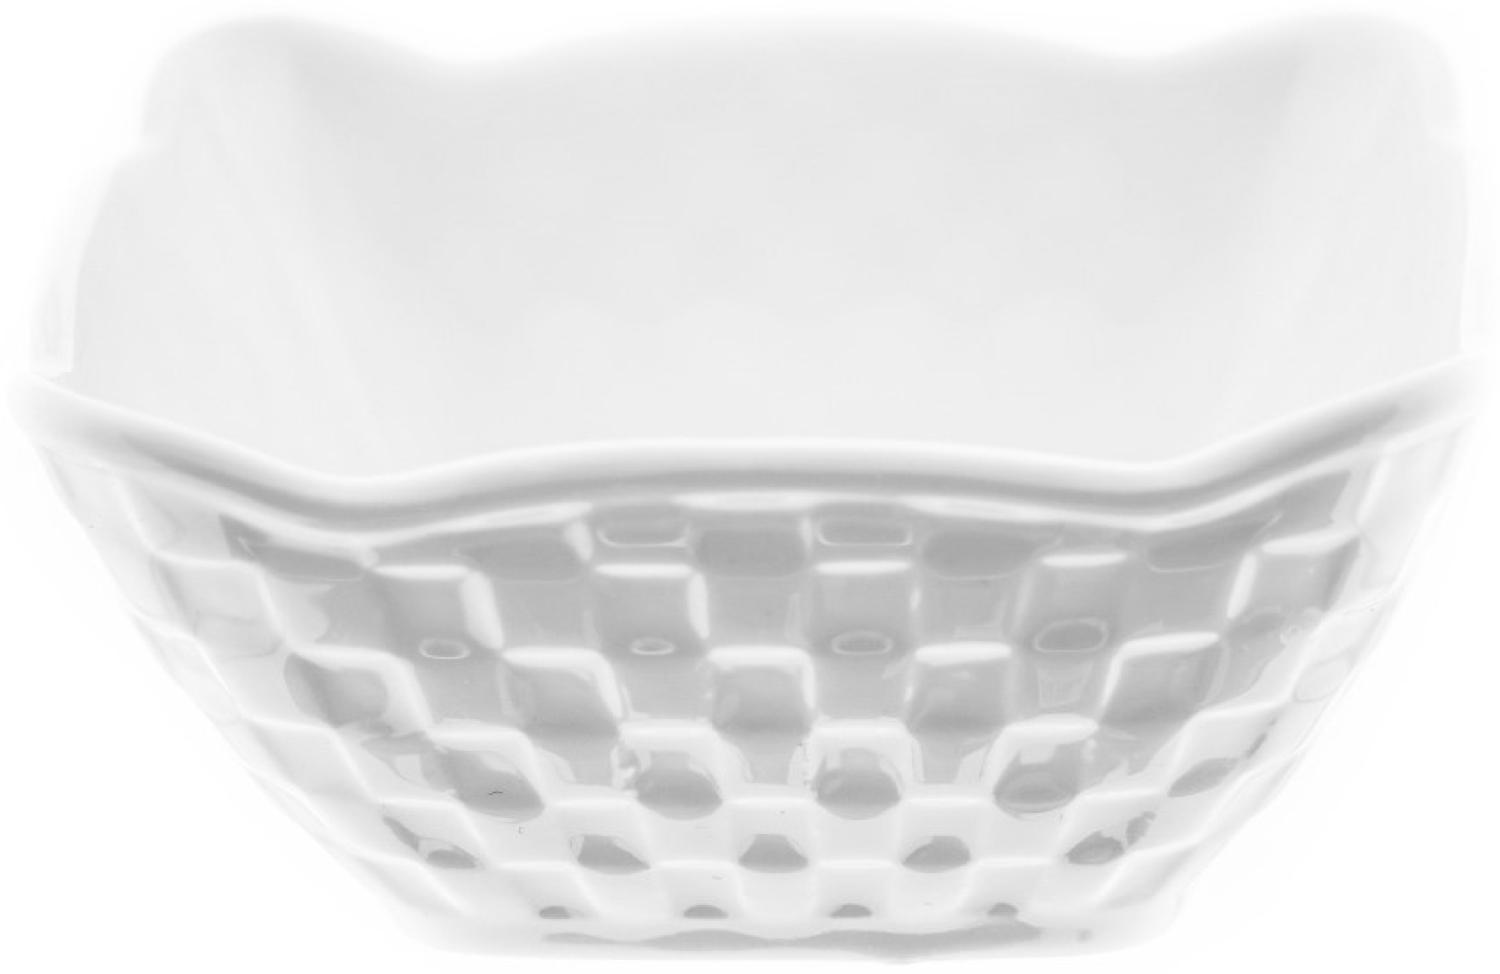 Almina 6er Snackschalen-Set aus Porzellan Servierschale mit Muster Weiß 200 ml Motiv 4 Bild 1